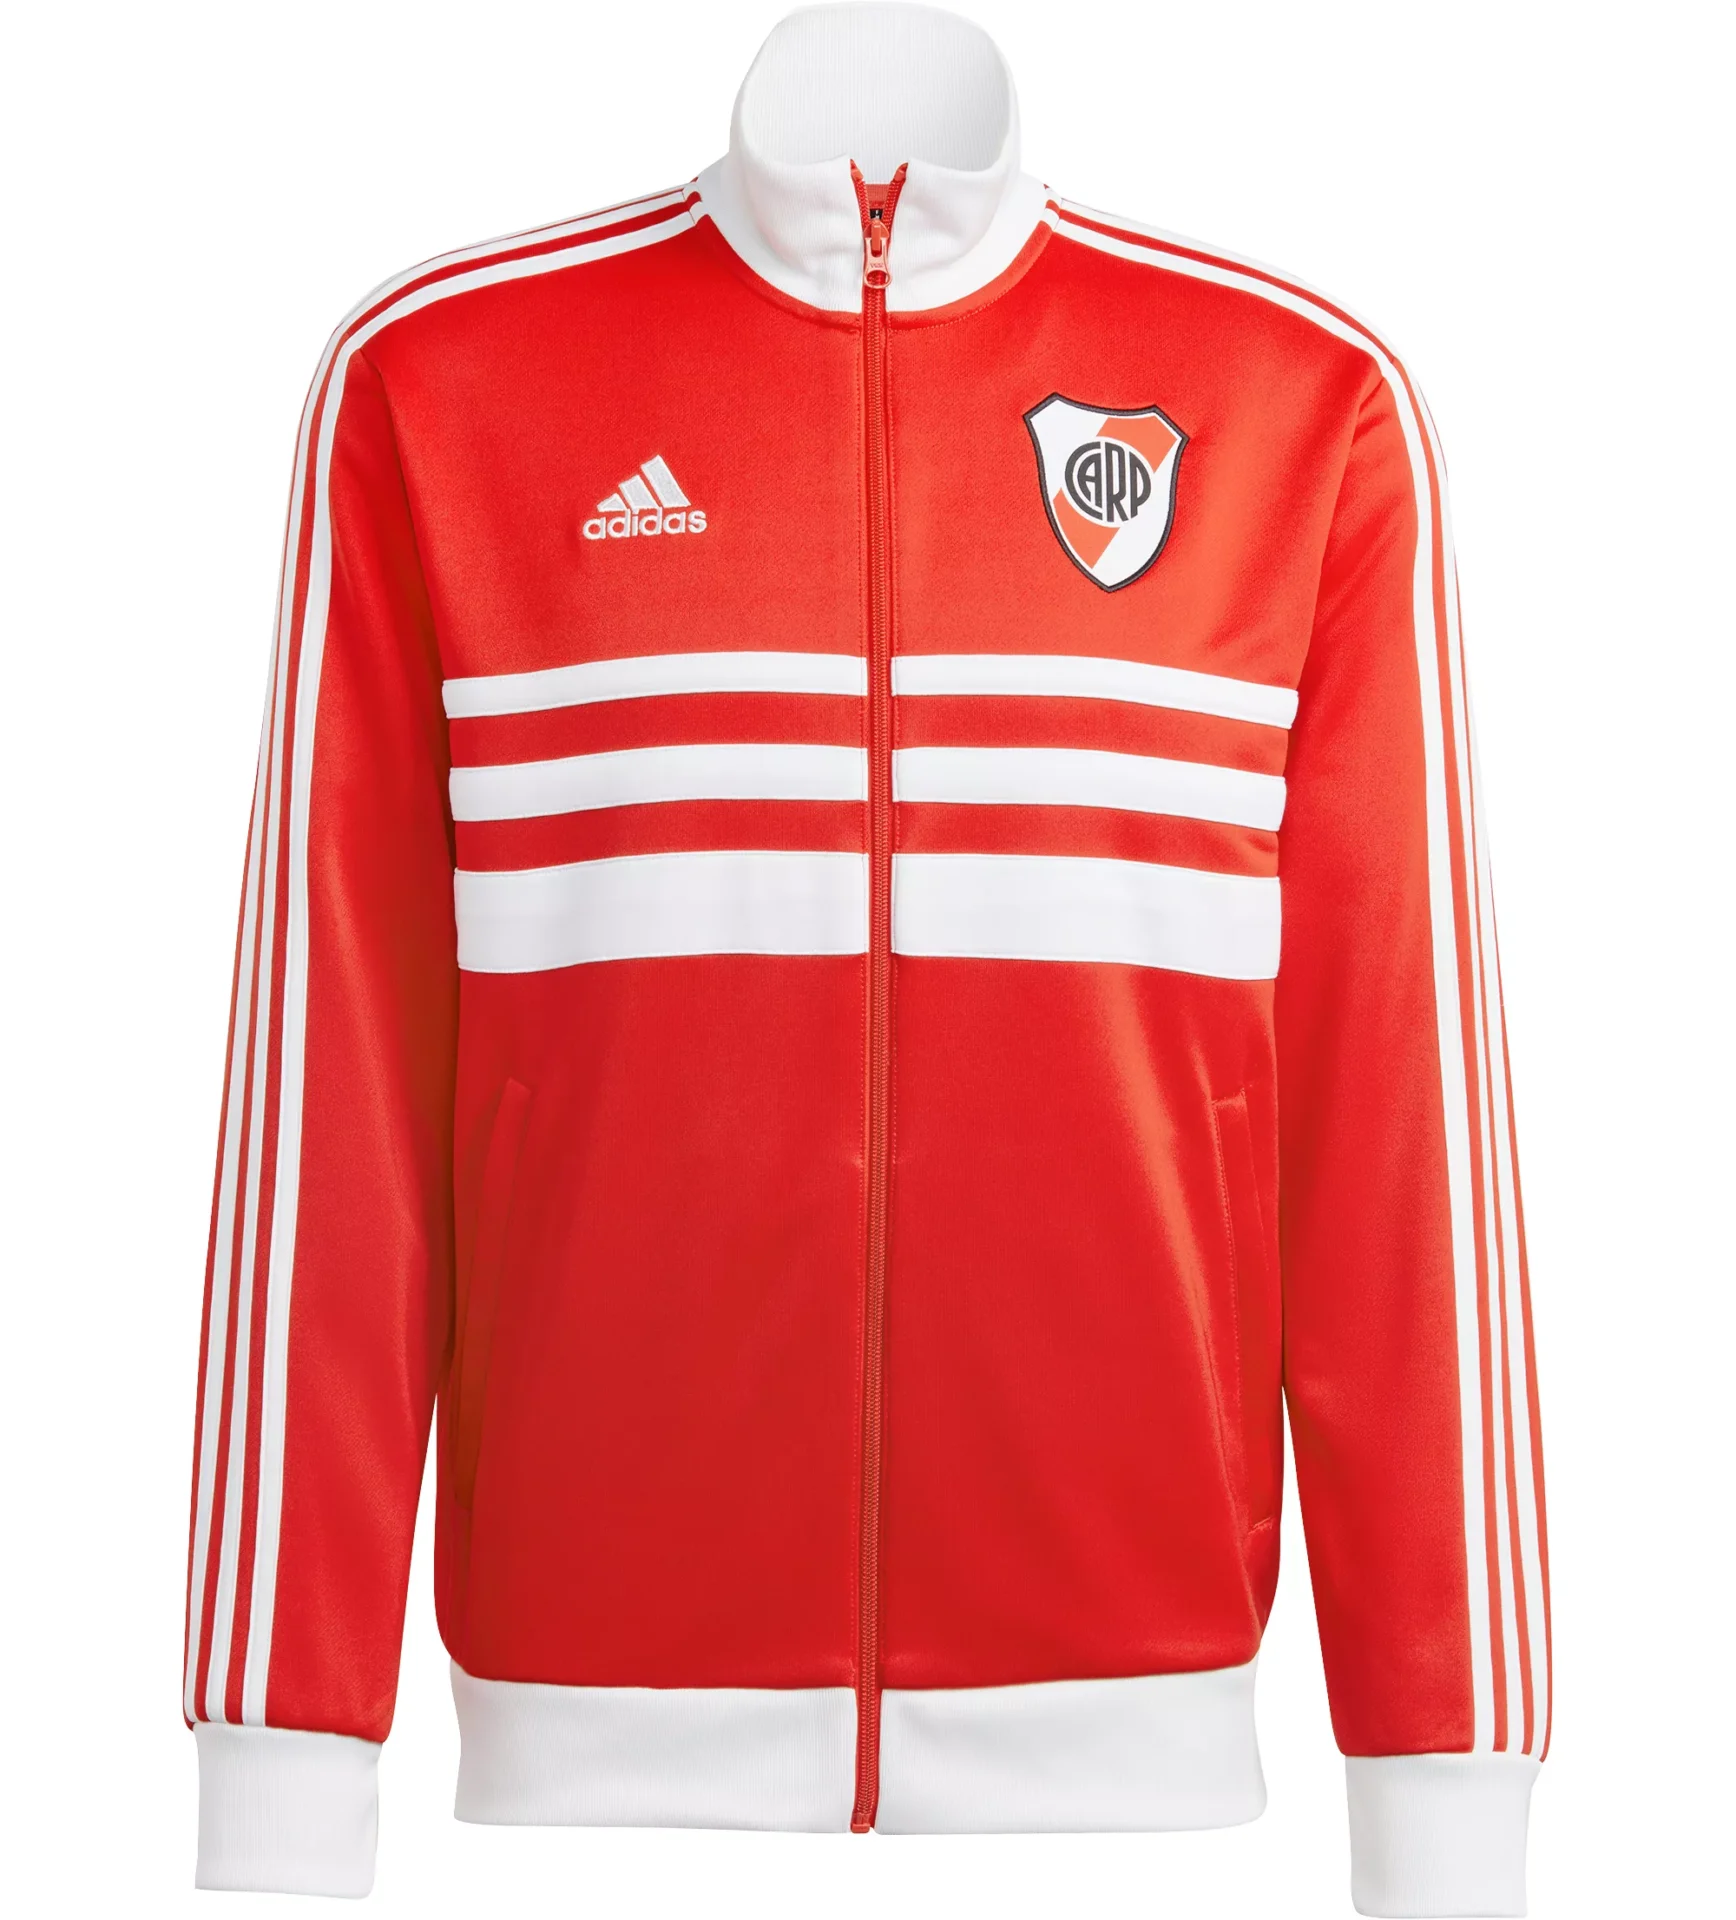 underviser vase brydning adidas River Plate 3-Stripe Track Jacket - Red - Soccer Shop USA